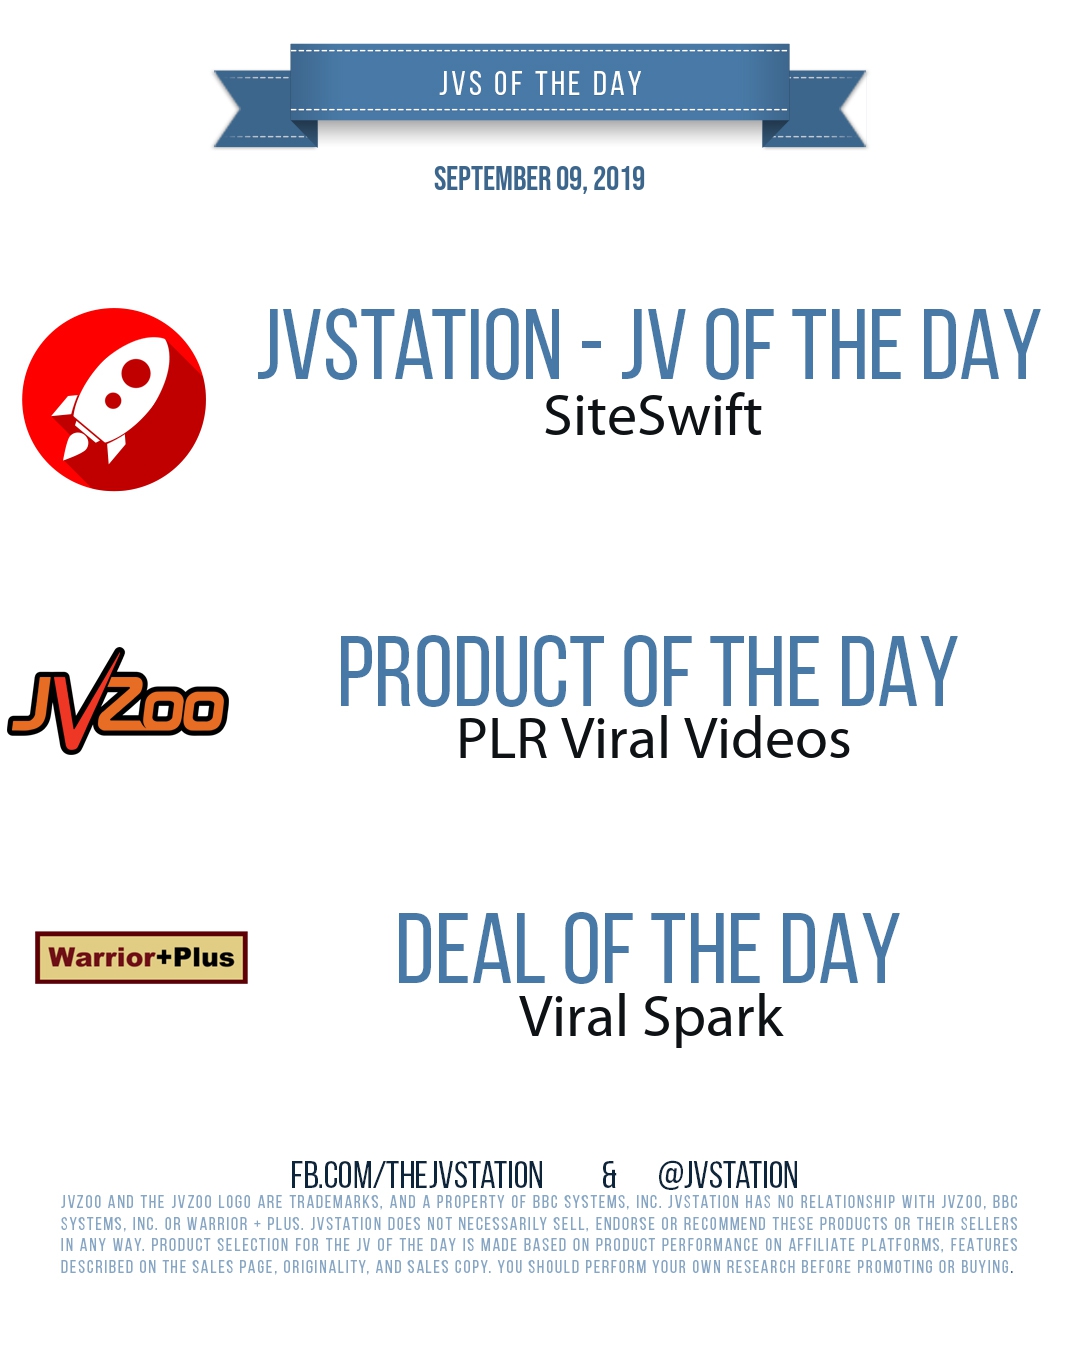 JVs of the day - September 09, 2019